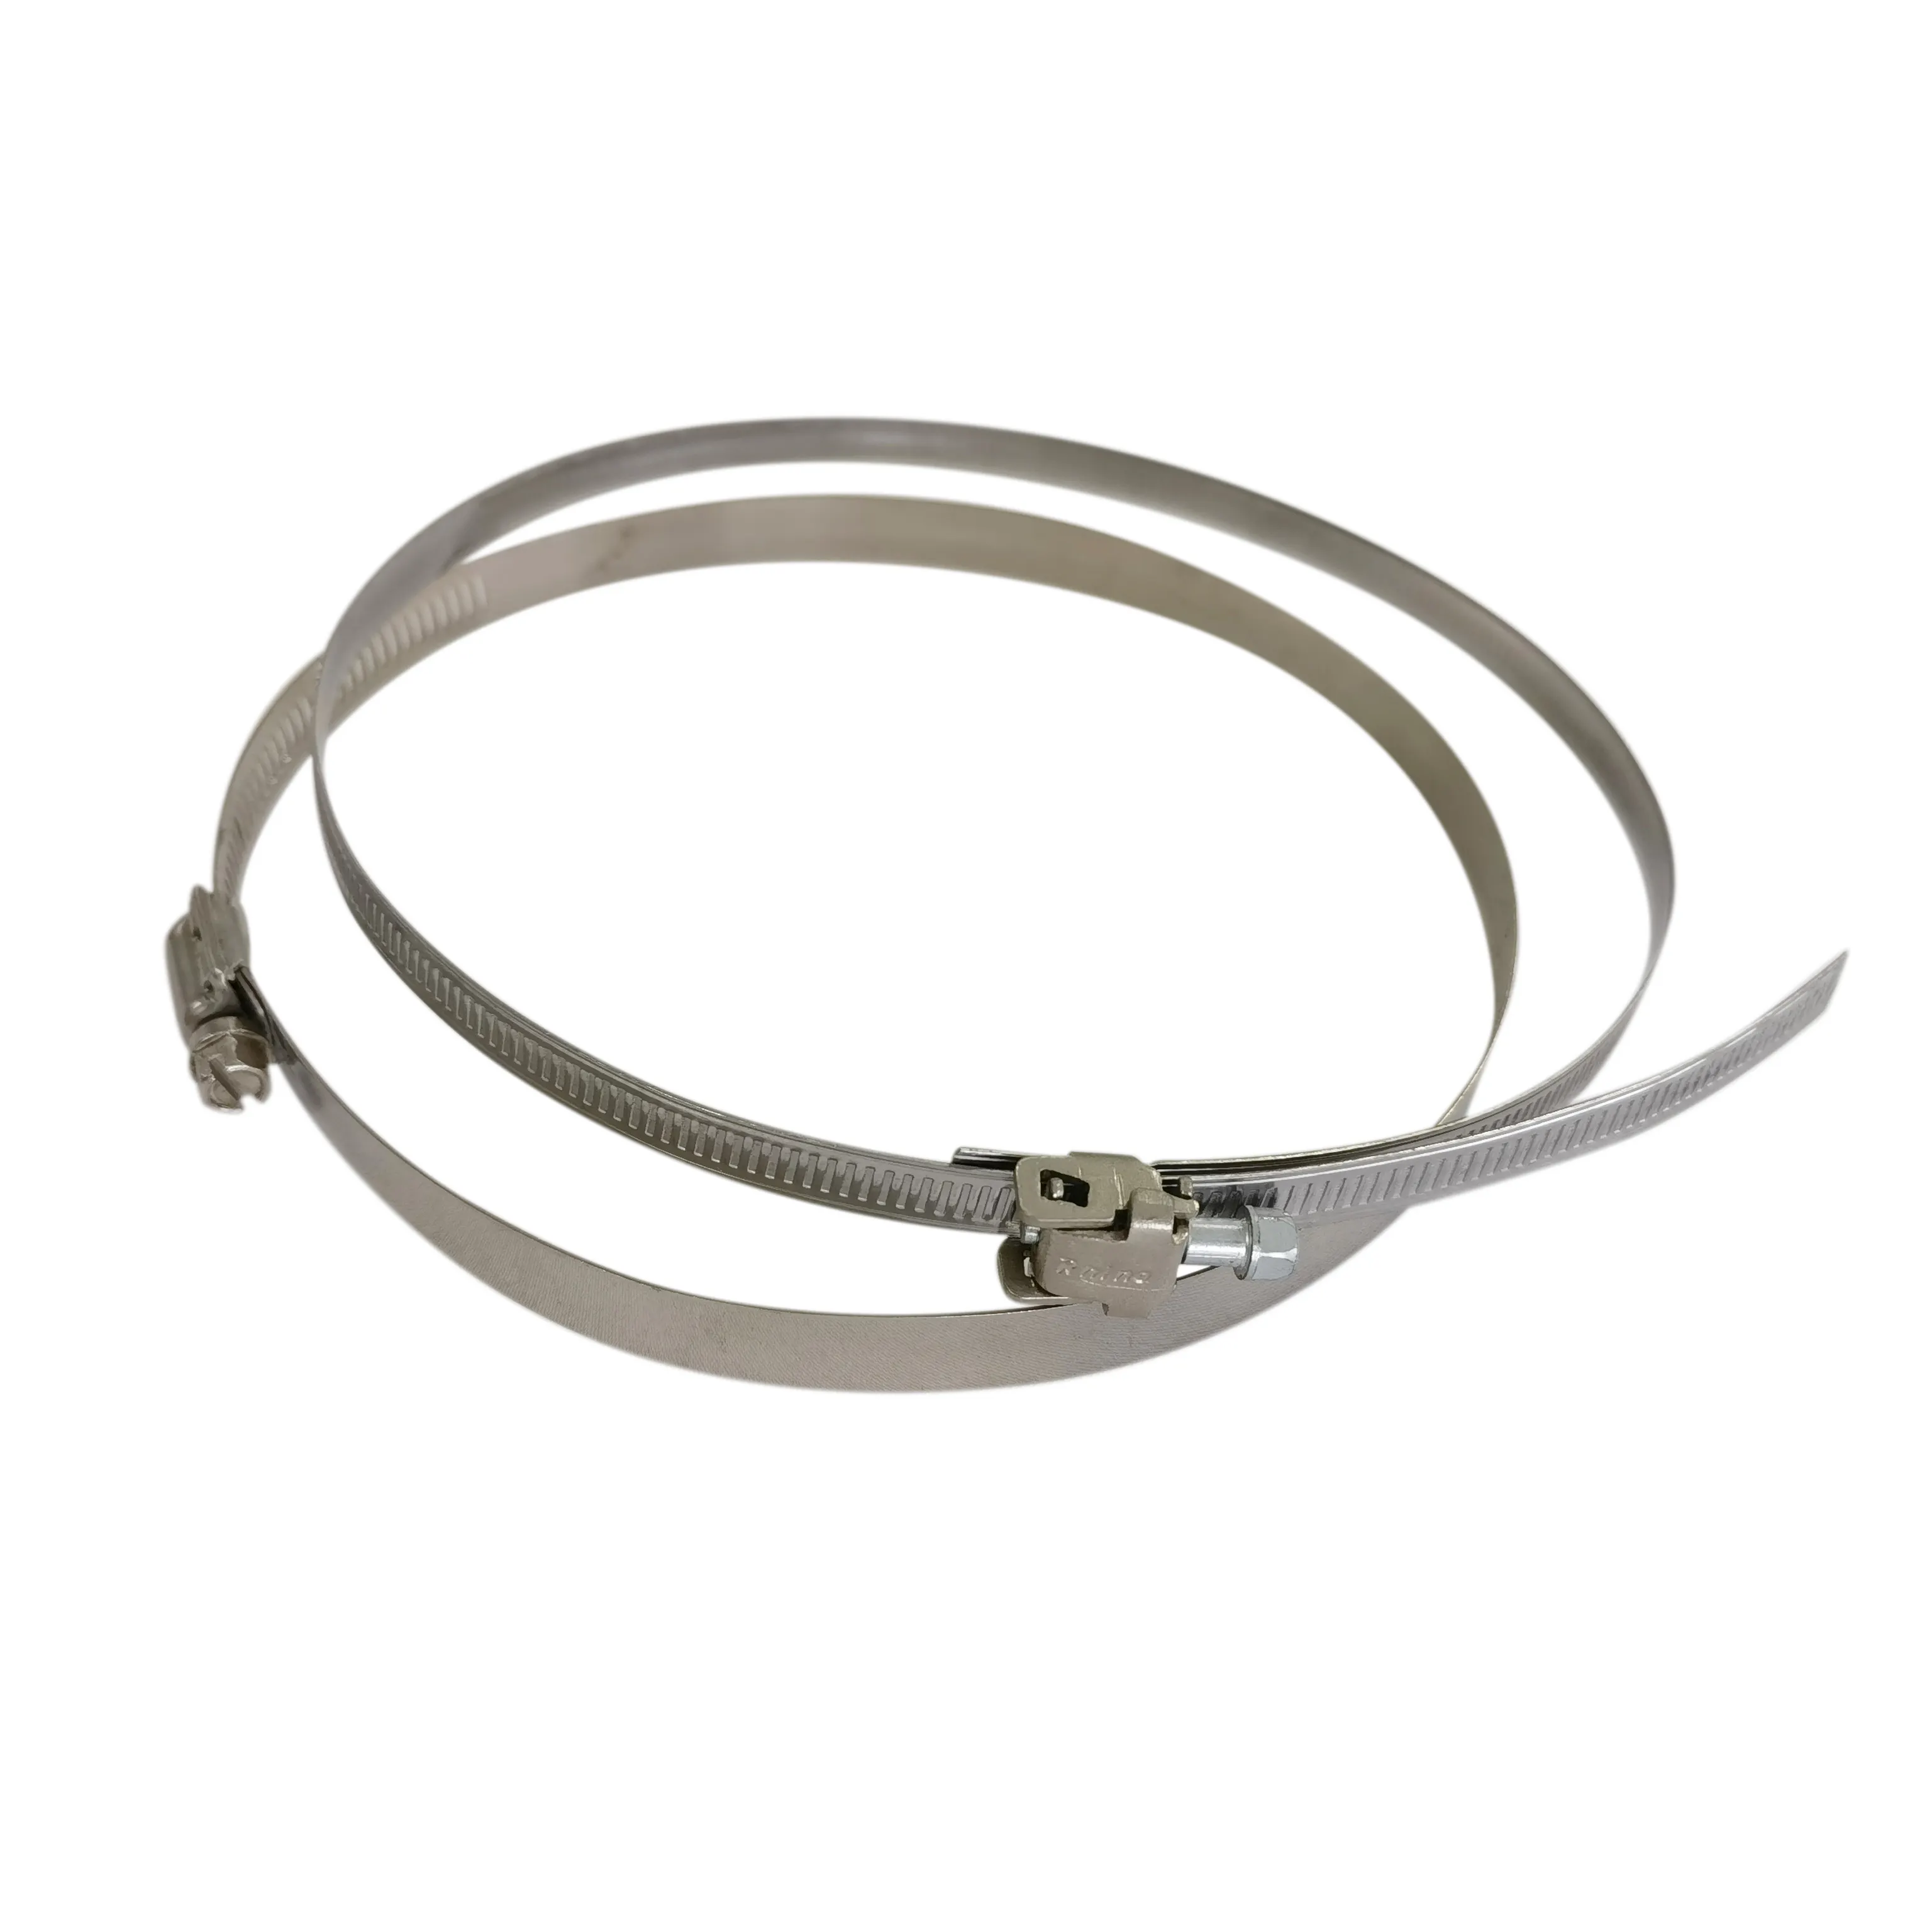 Vente en gros de colliers de serrage flexibles personnalisés, colliers de serrage solides en acier inoxydable